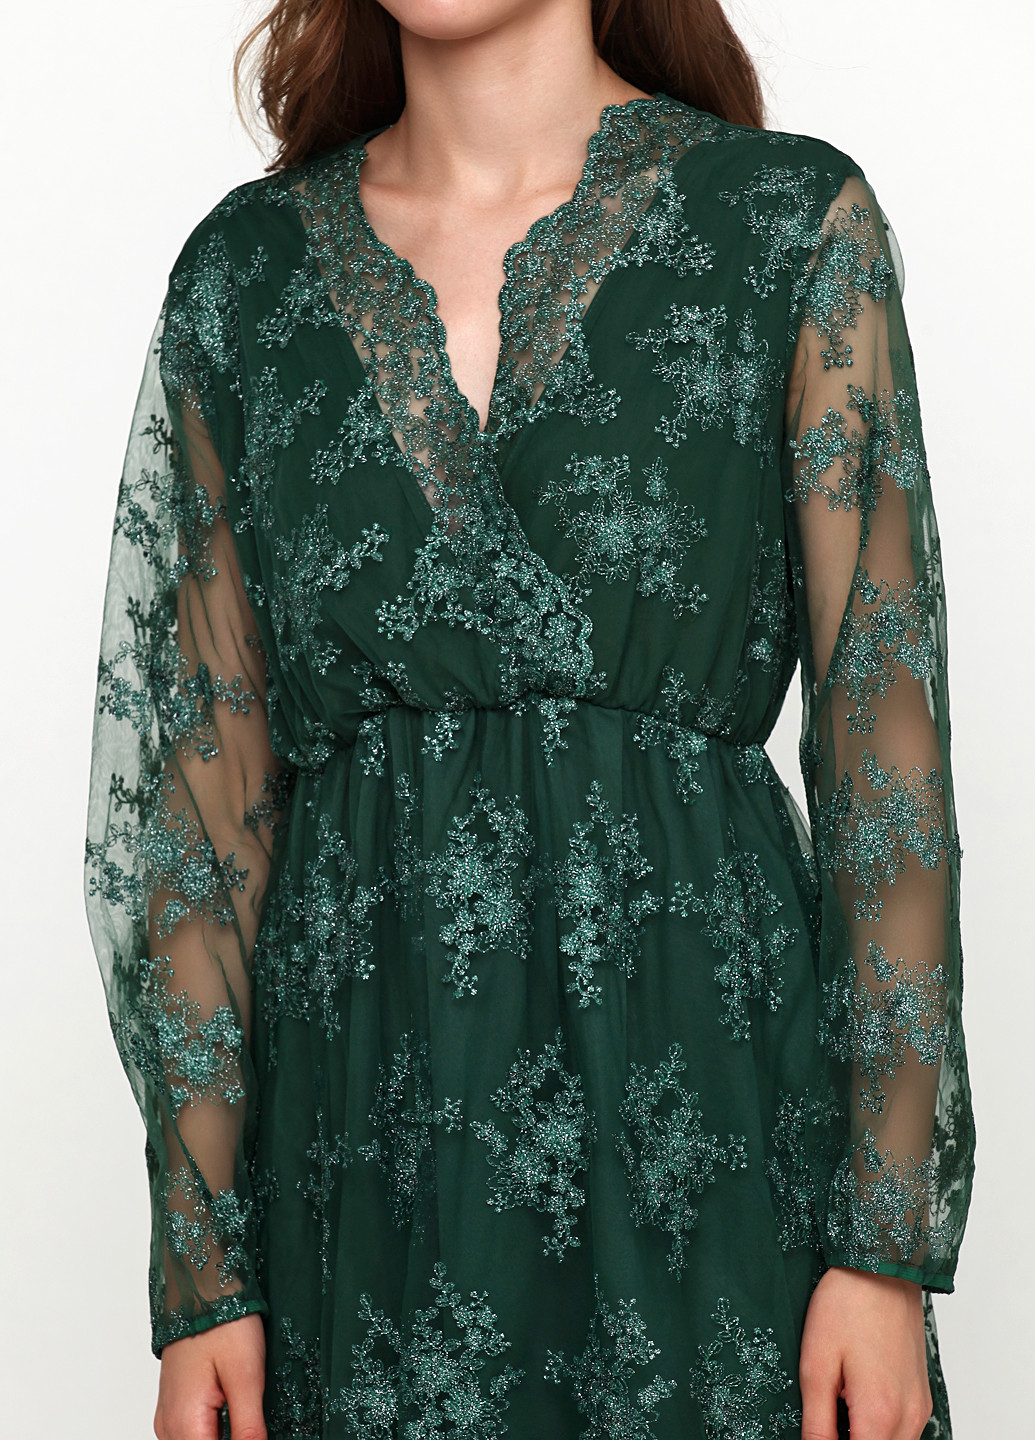 Зеленое коктейльное платье Miliana с цветочным принтом